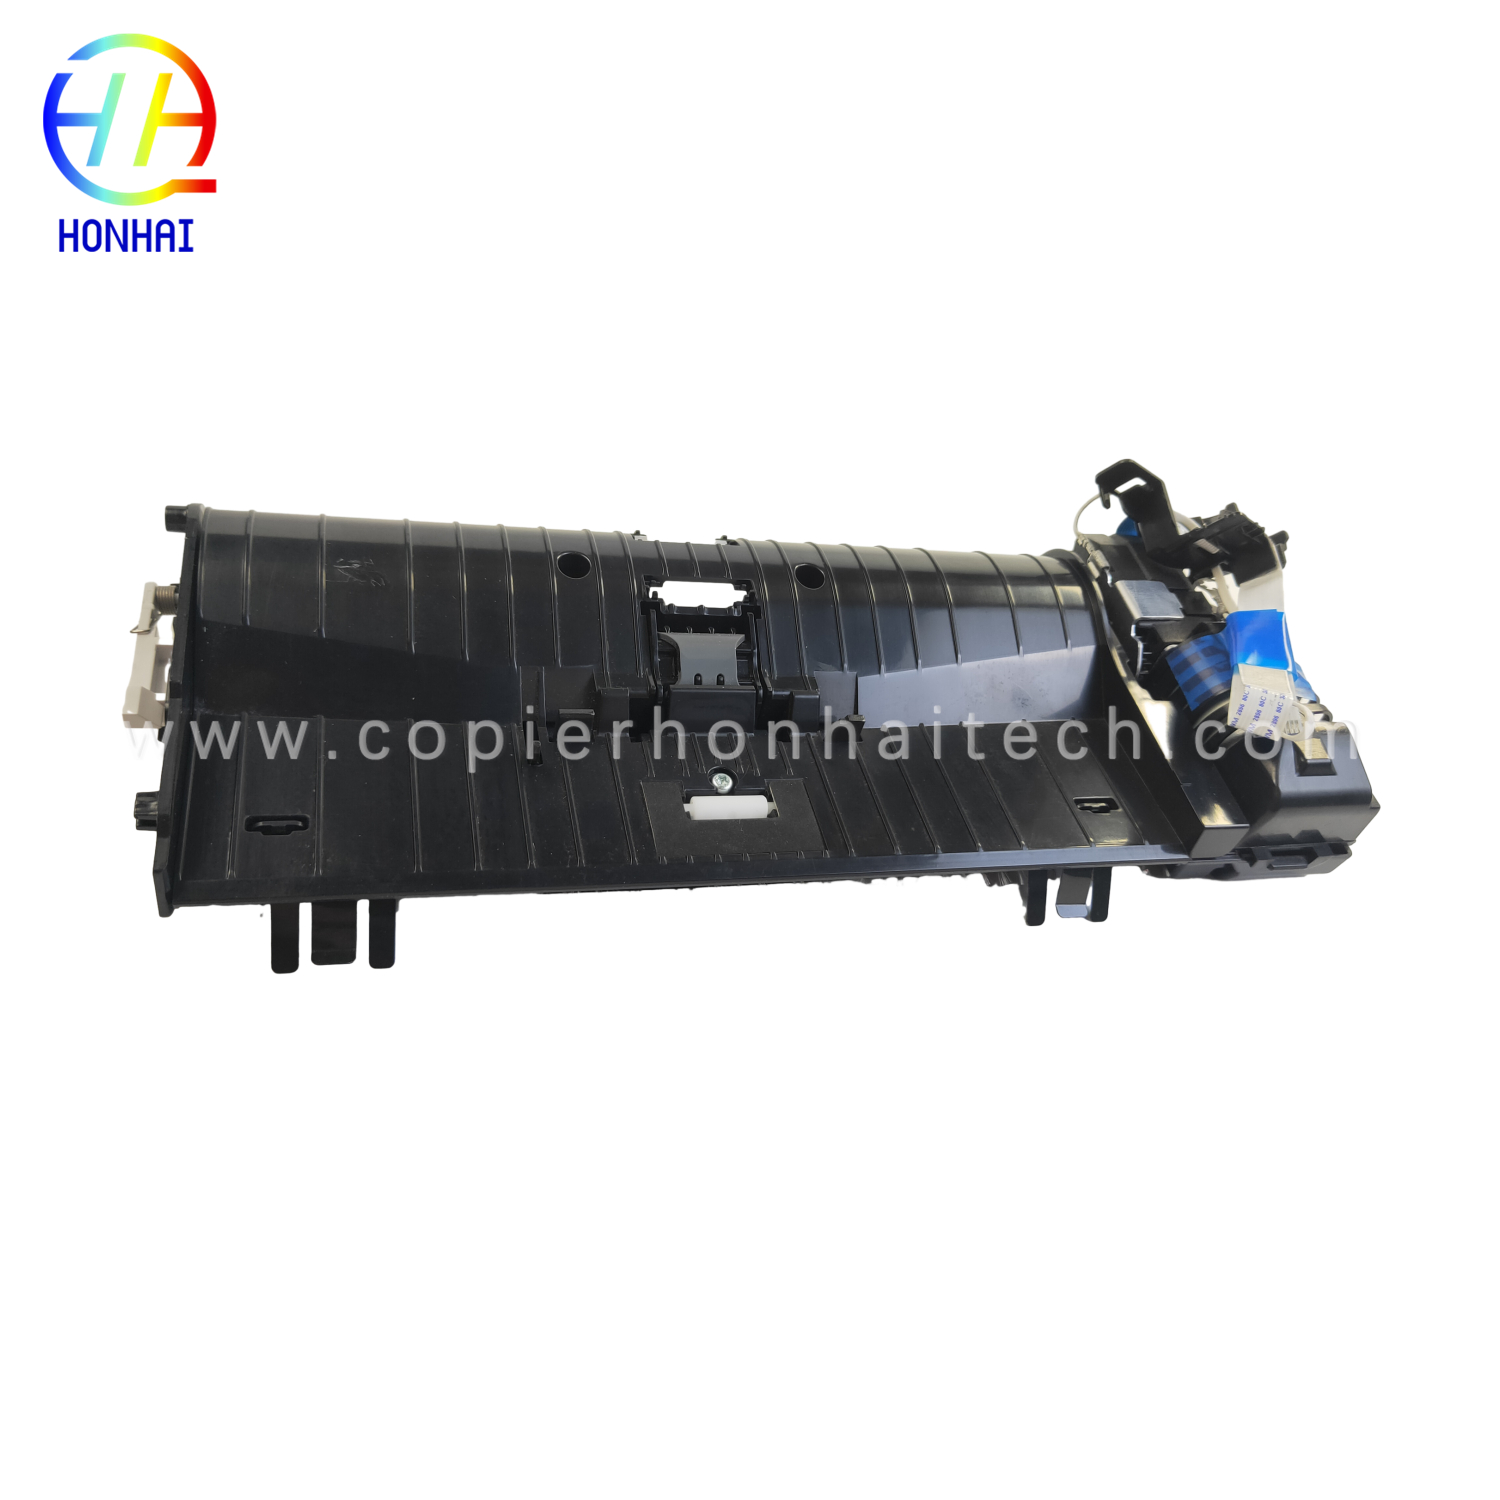 https://www.copierhonhaitech.com/original-adf-assemble-for-hp-color-laserjet-m277-product/